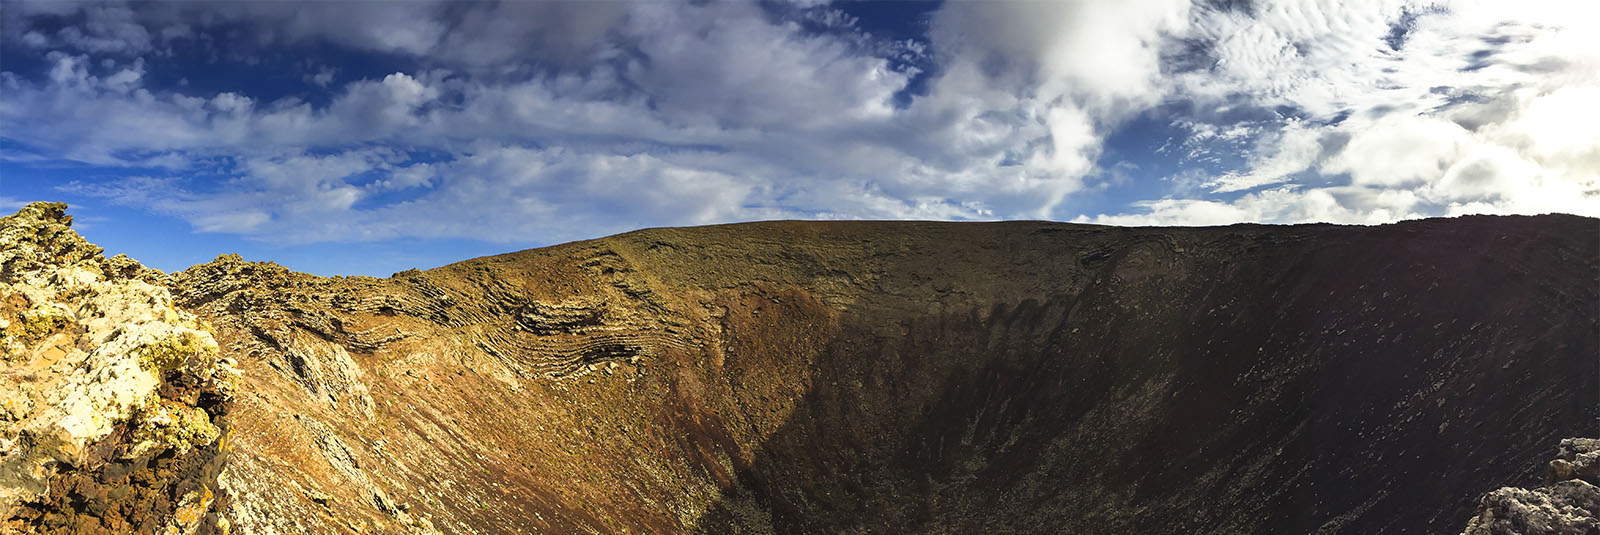 Wandern + Trekking auf Fuerteventura: Über die Vulkane – von Lajares nach Corralejo.